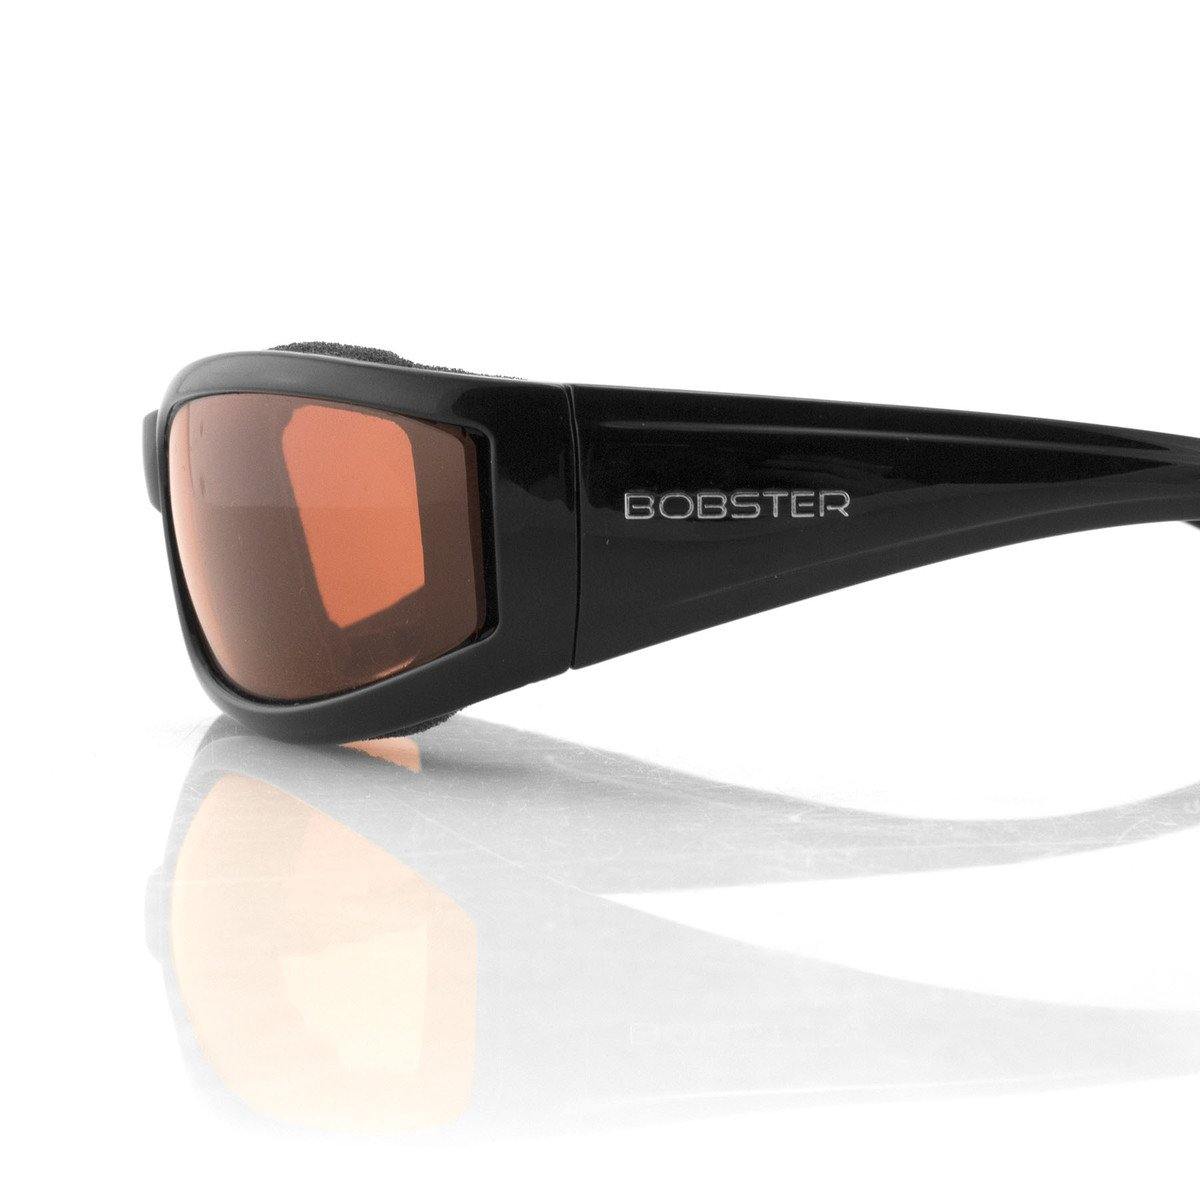 Bobster Invader Sunglasses, Gloss Black Frame, Clear Photochromic Lenses - American Legend Rider